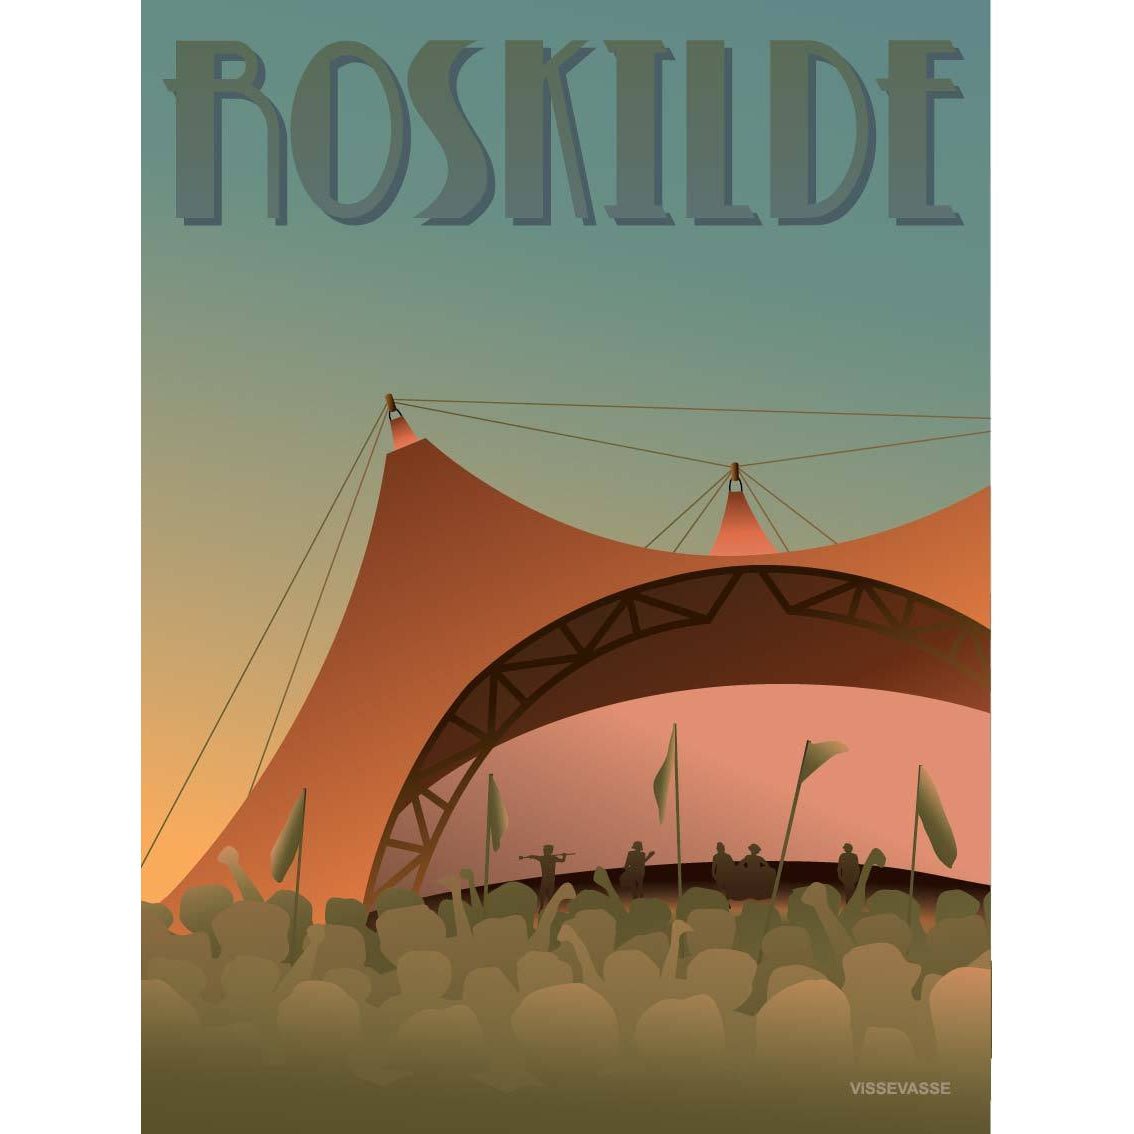 Póster del Festival Vissevasse Roskilde, 15 x21 cm